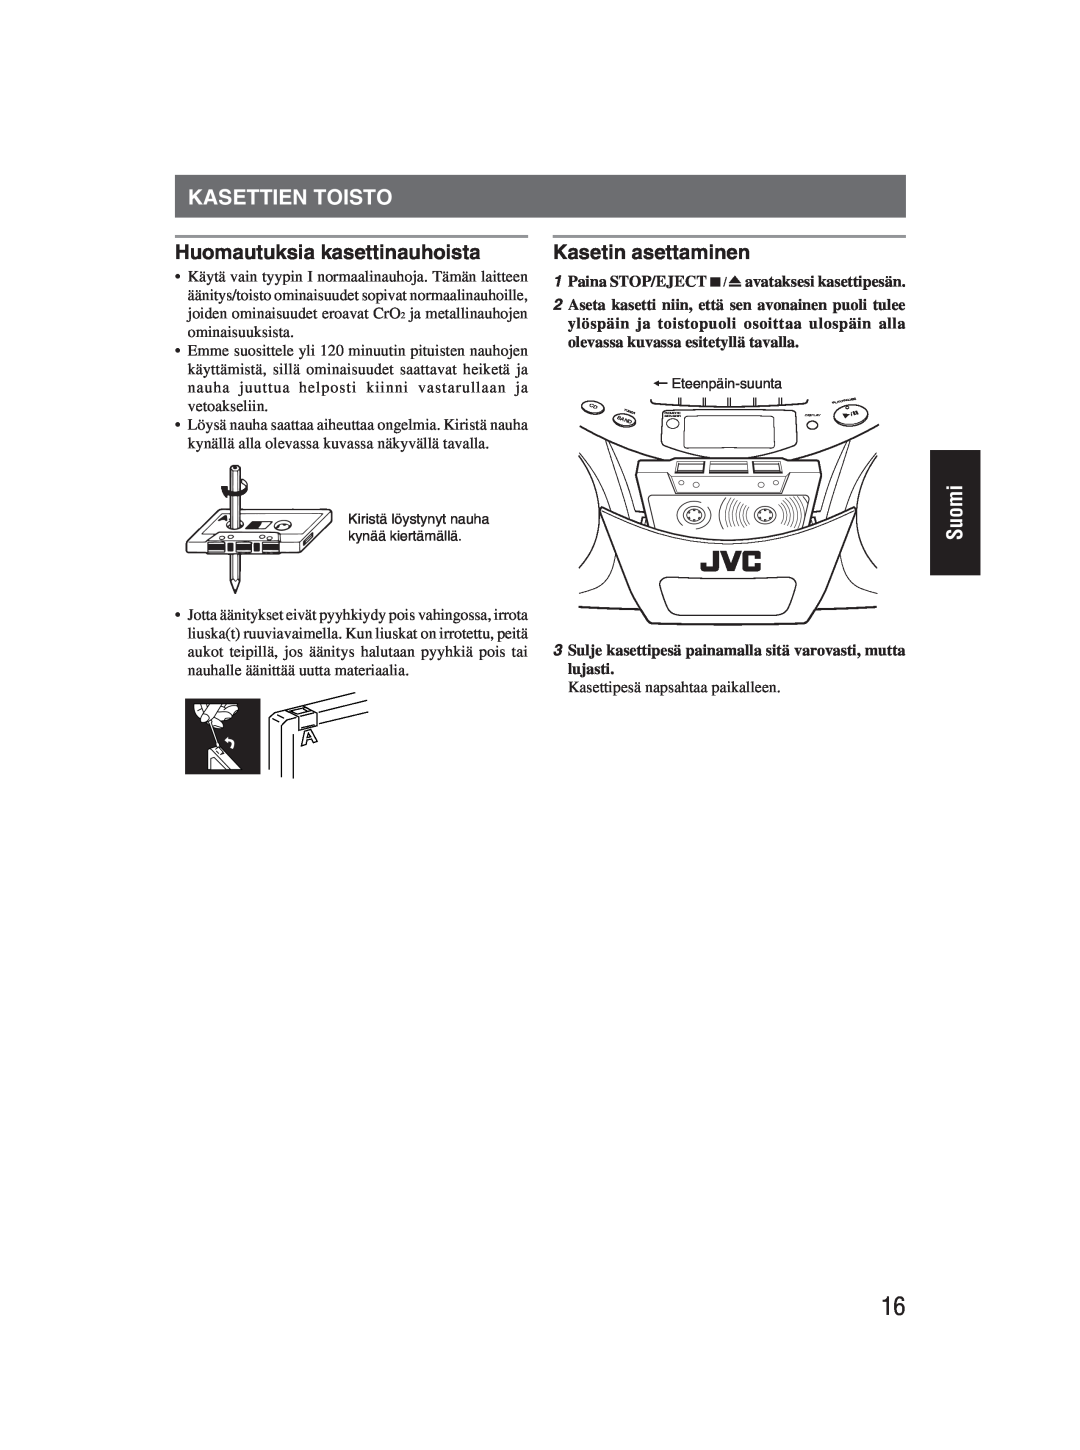 JVC RC-EX25S manual Kasettien Toisto, Huomautuksia kasettinauhoista, Kasetin asettaminen, Suomi 